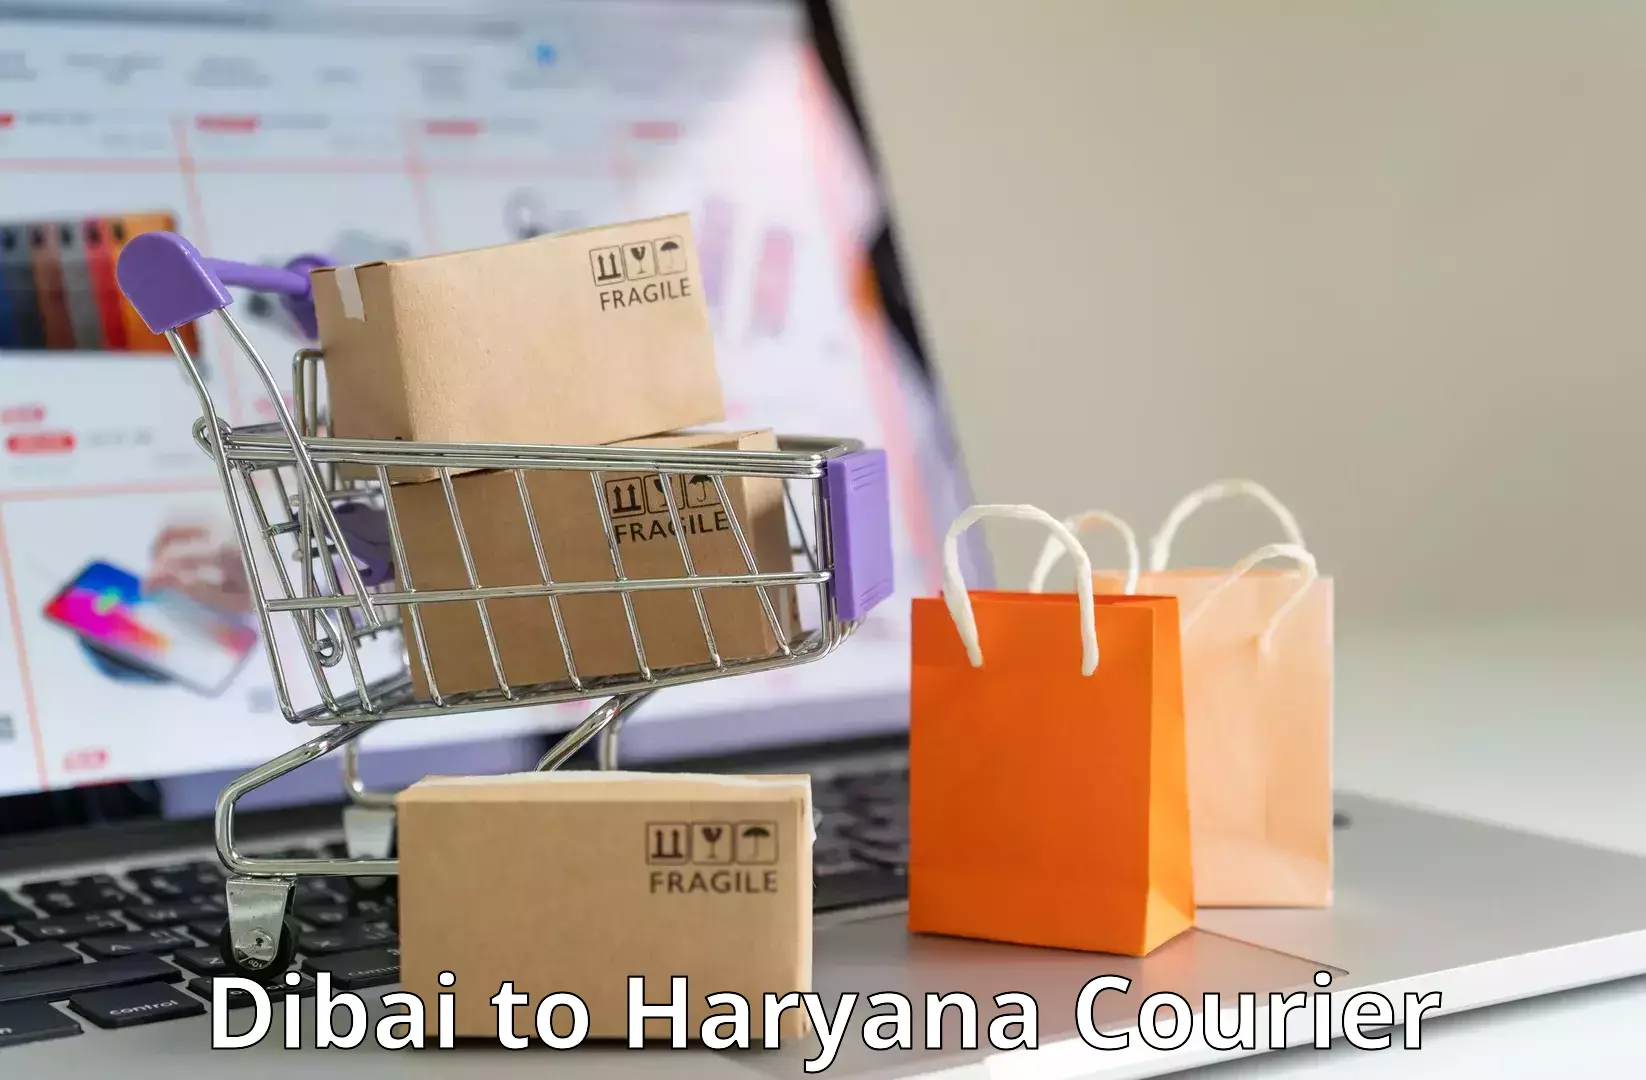 24/7 shipping services Dibai to NCR Haryana